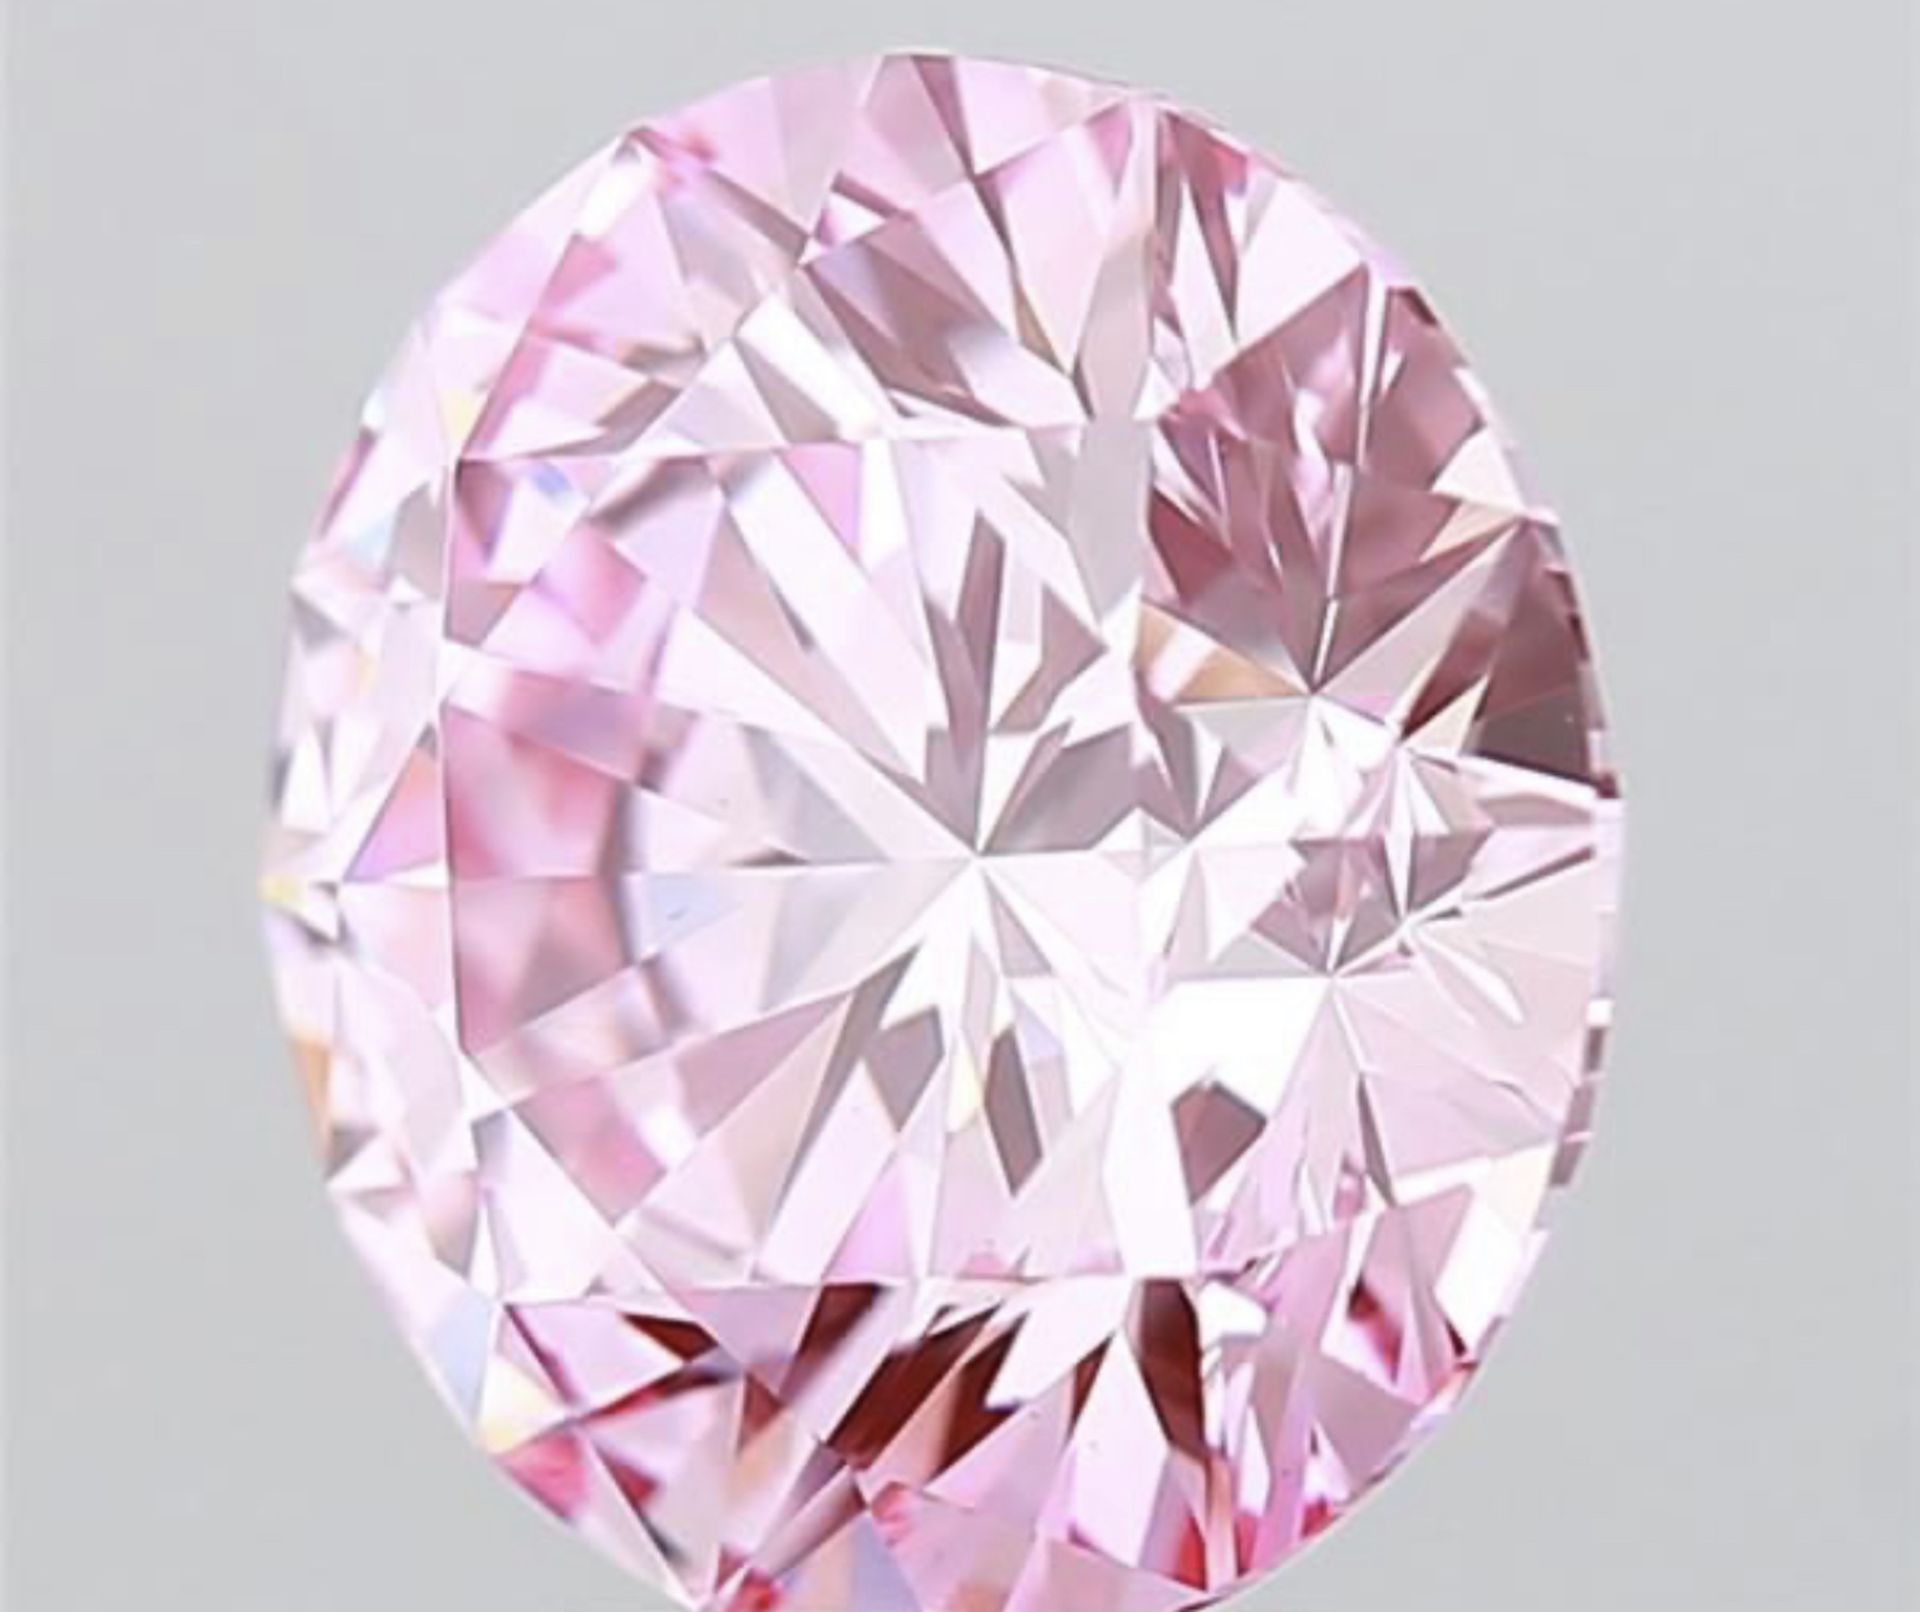 Round Brilliant Cut Diamond Fancy Pink Colour VS1 Clarity 4.21 Carat ID EX EX -LG591359939 - IGI - Image 2 of 8